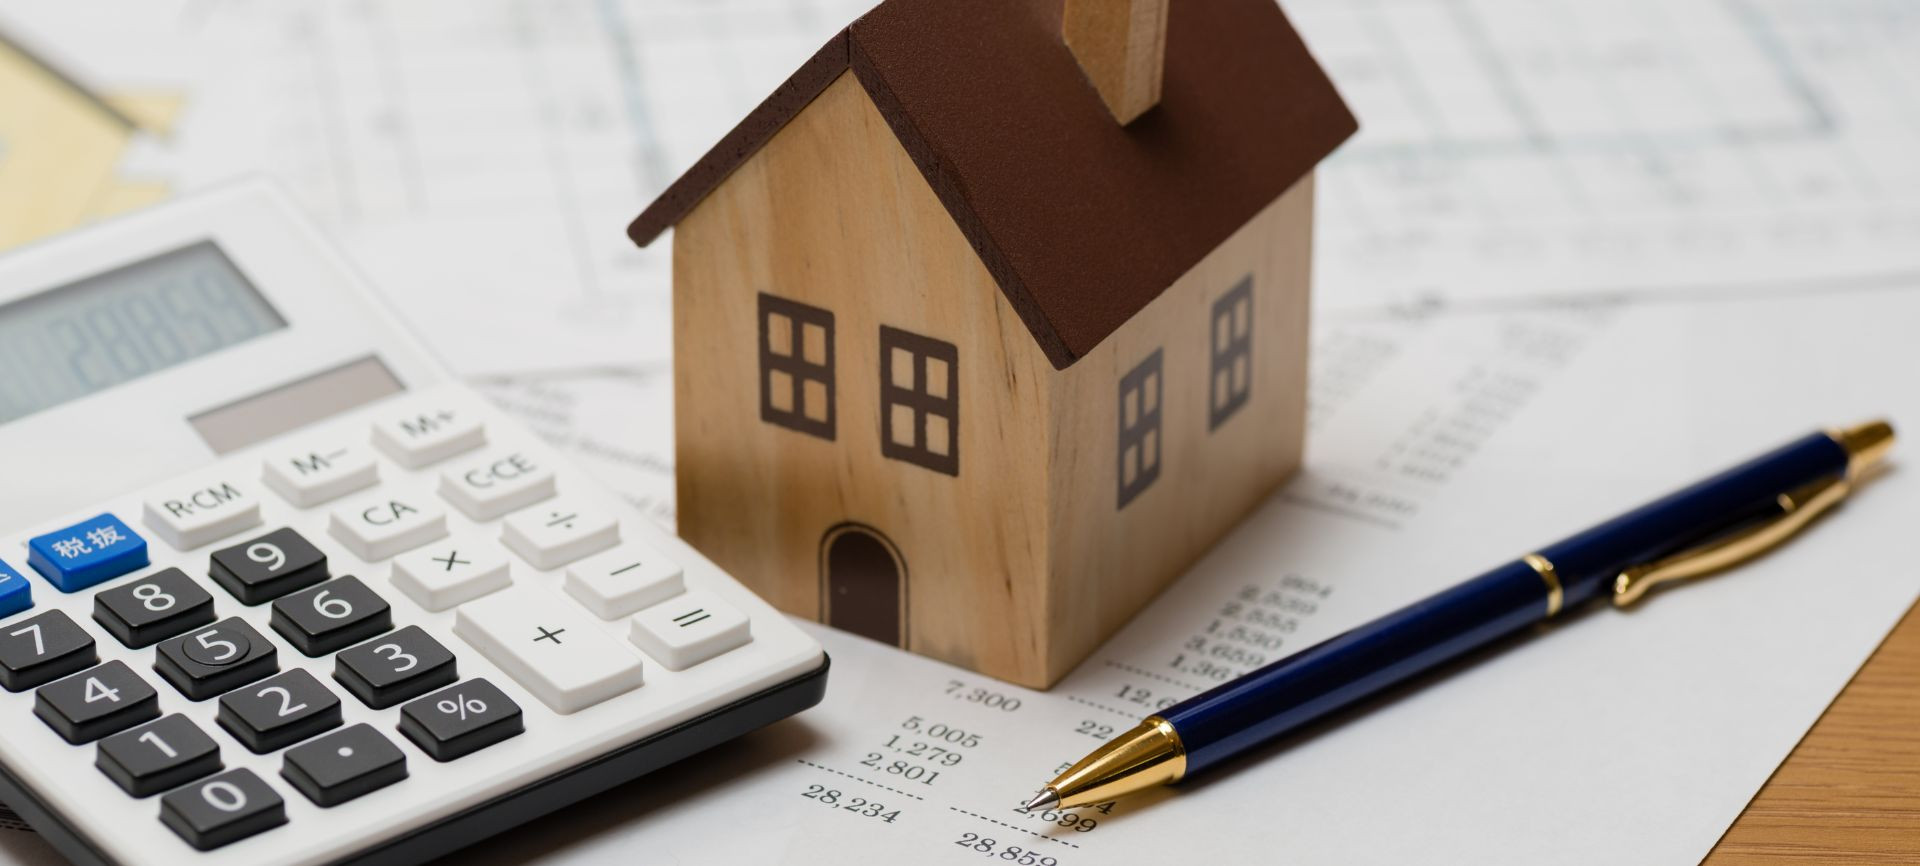 Berencana Membeli Rumah? Kenali Dulu dengan Biaya dan Pajak yang Harus Ditanggung Saat Jual Beli Rumah